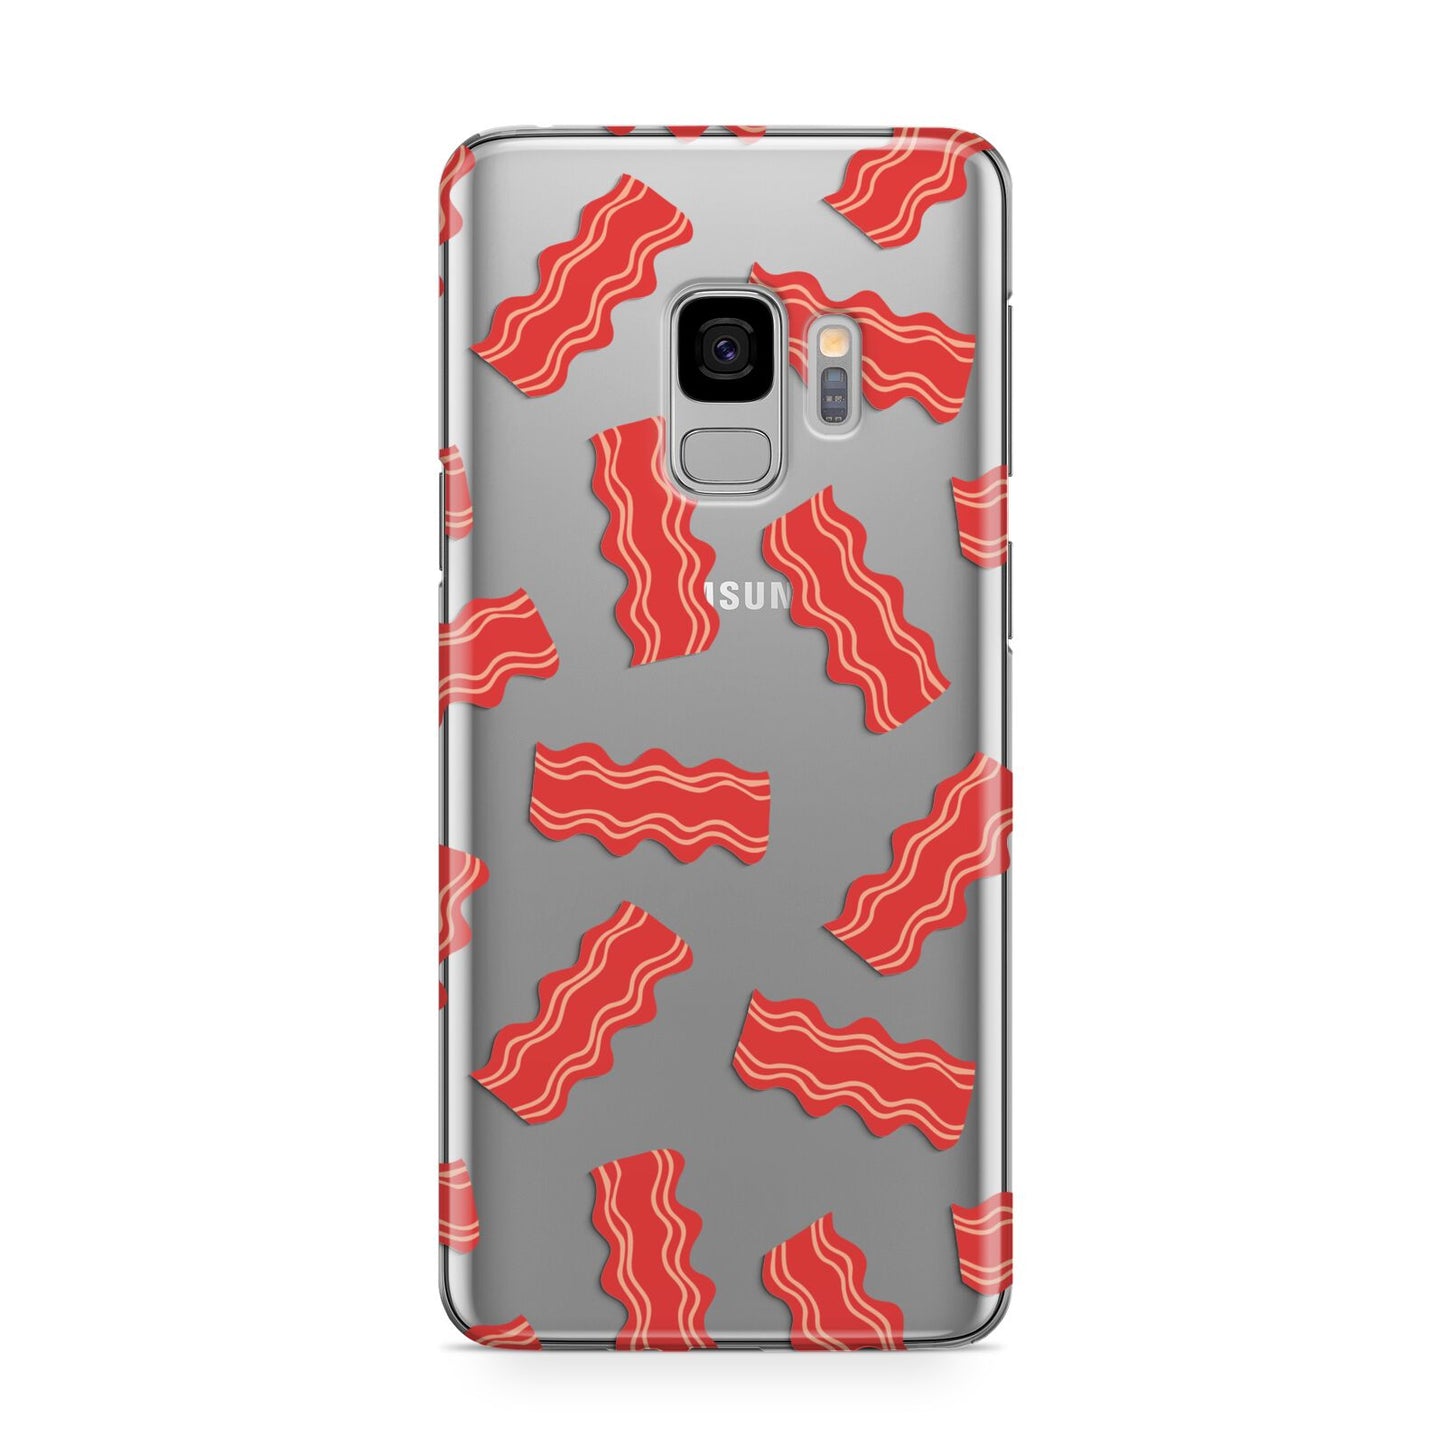 Bacon Samsung Galaxy S9 Case